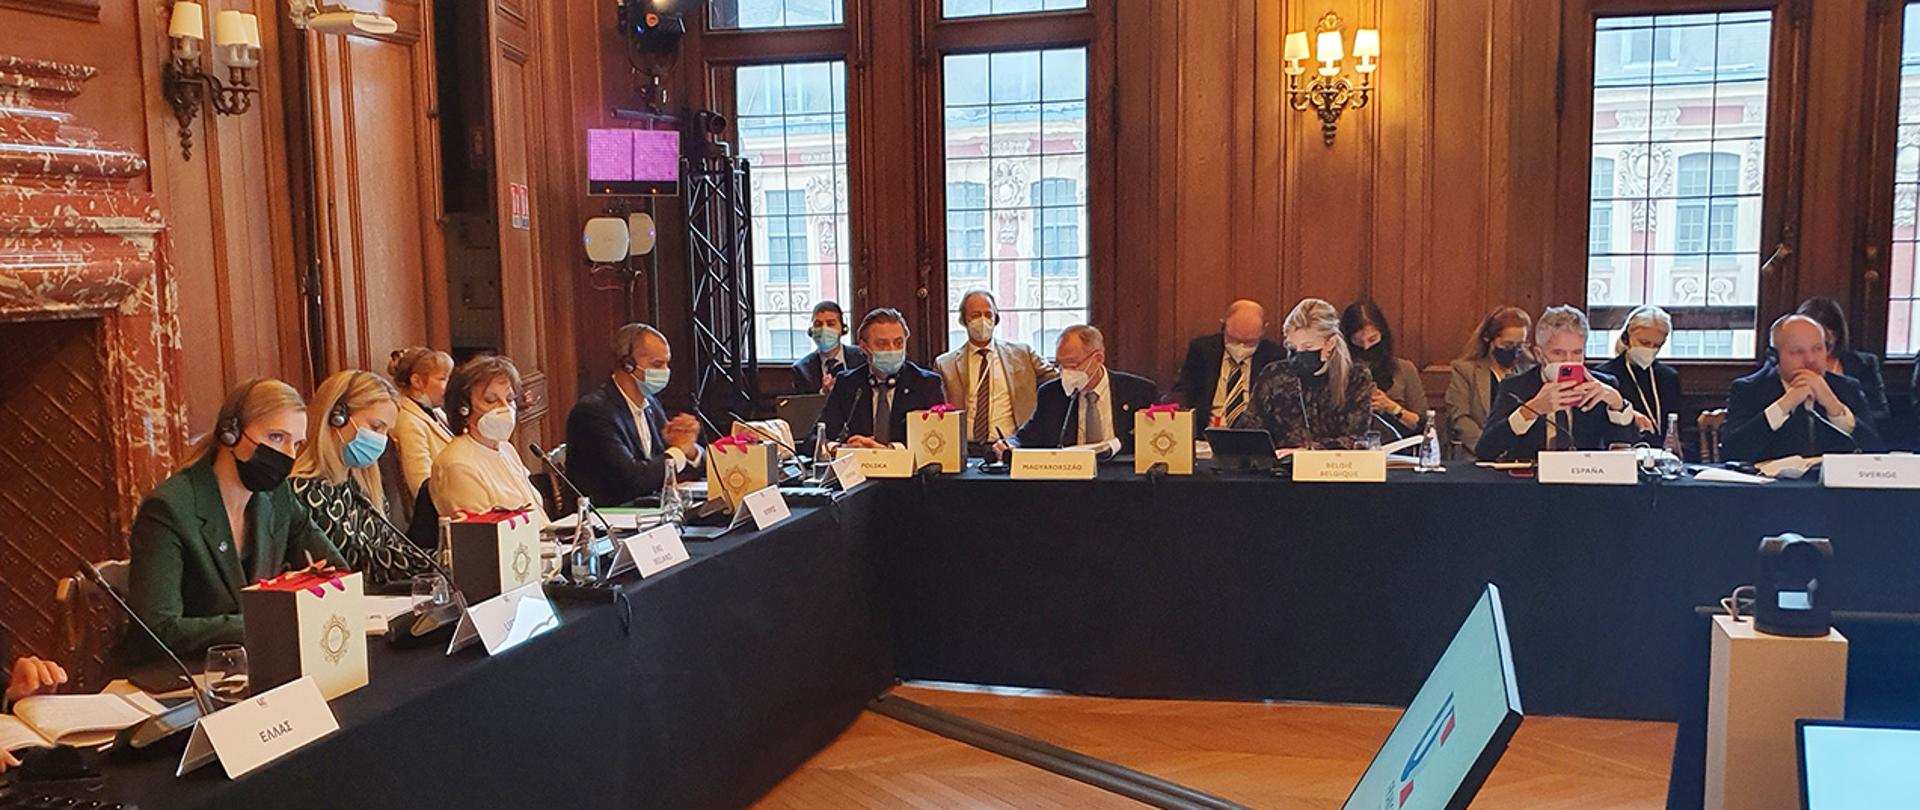 Na zdjęciu widać wiceministra Bartosza Grodeckiego i innych uczestników spotkania siedzących za stołem w trakcie dyskusji.